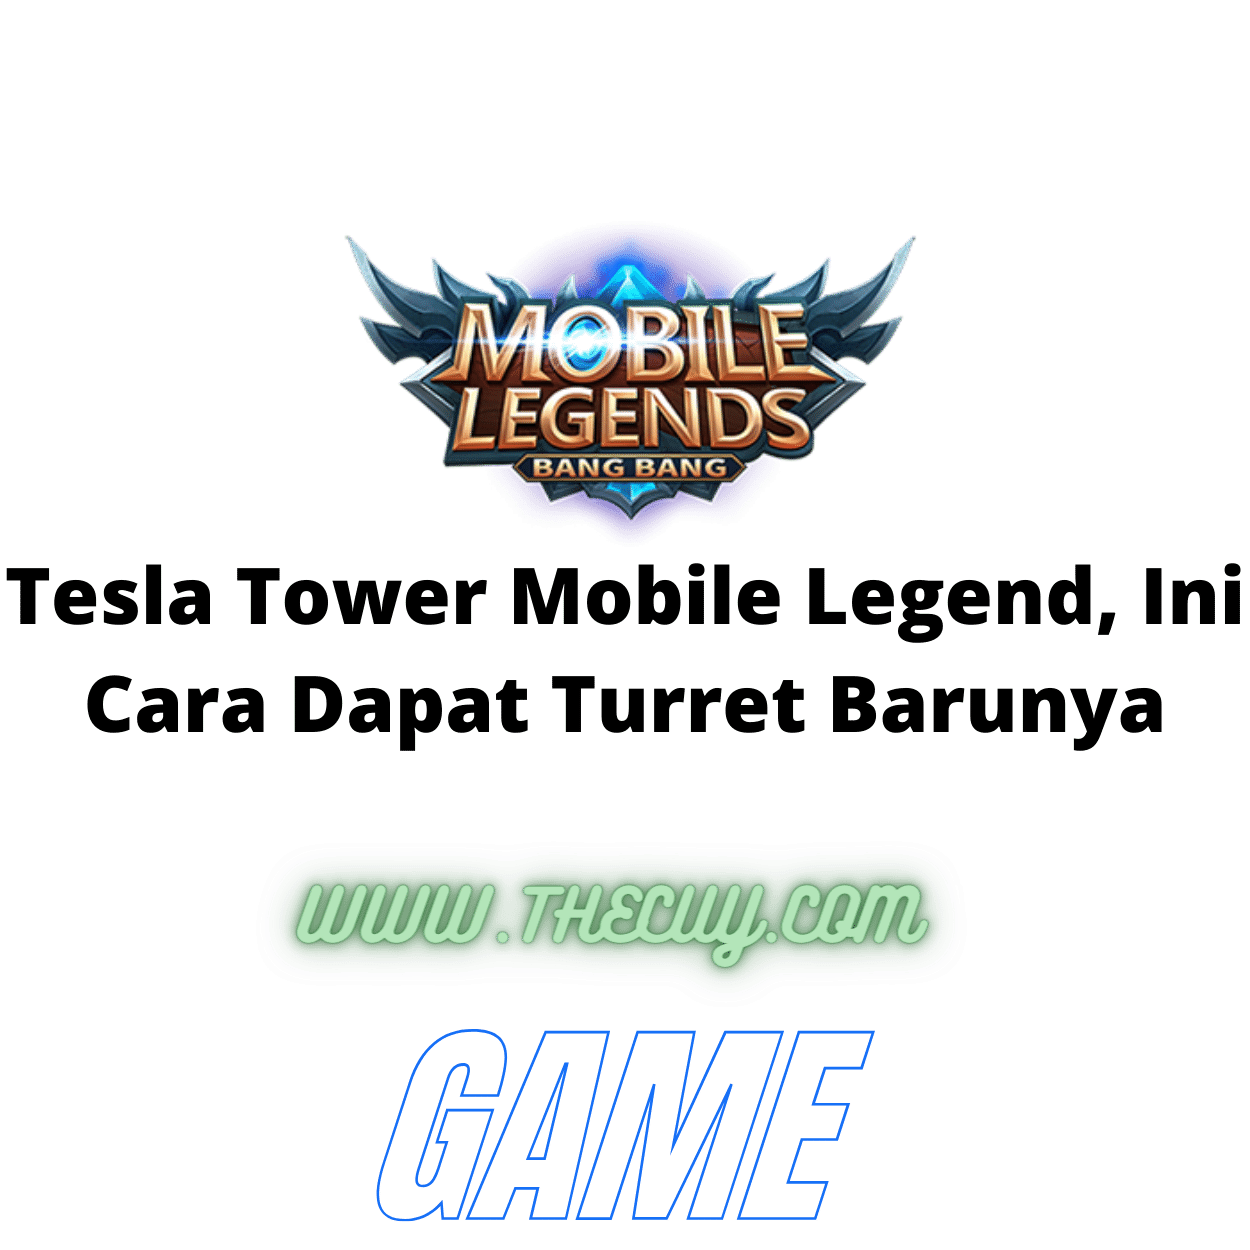 Tesla Tower Mobile Legend, Ini Cara Dapat Turret Barunya